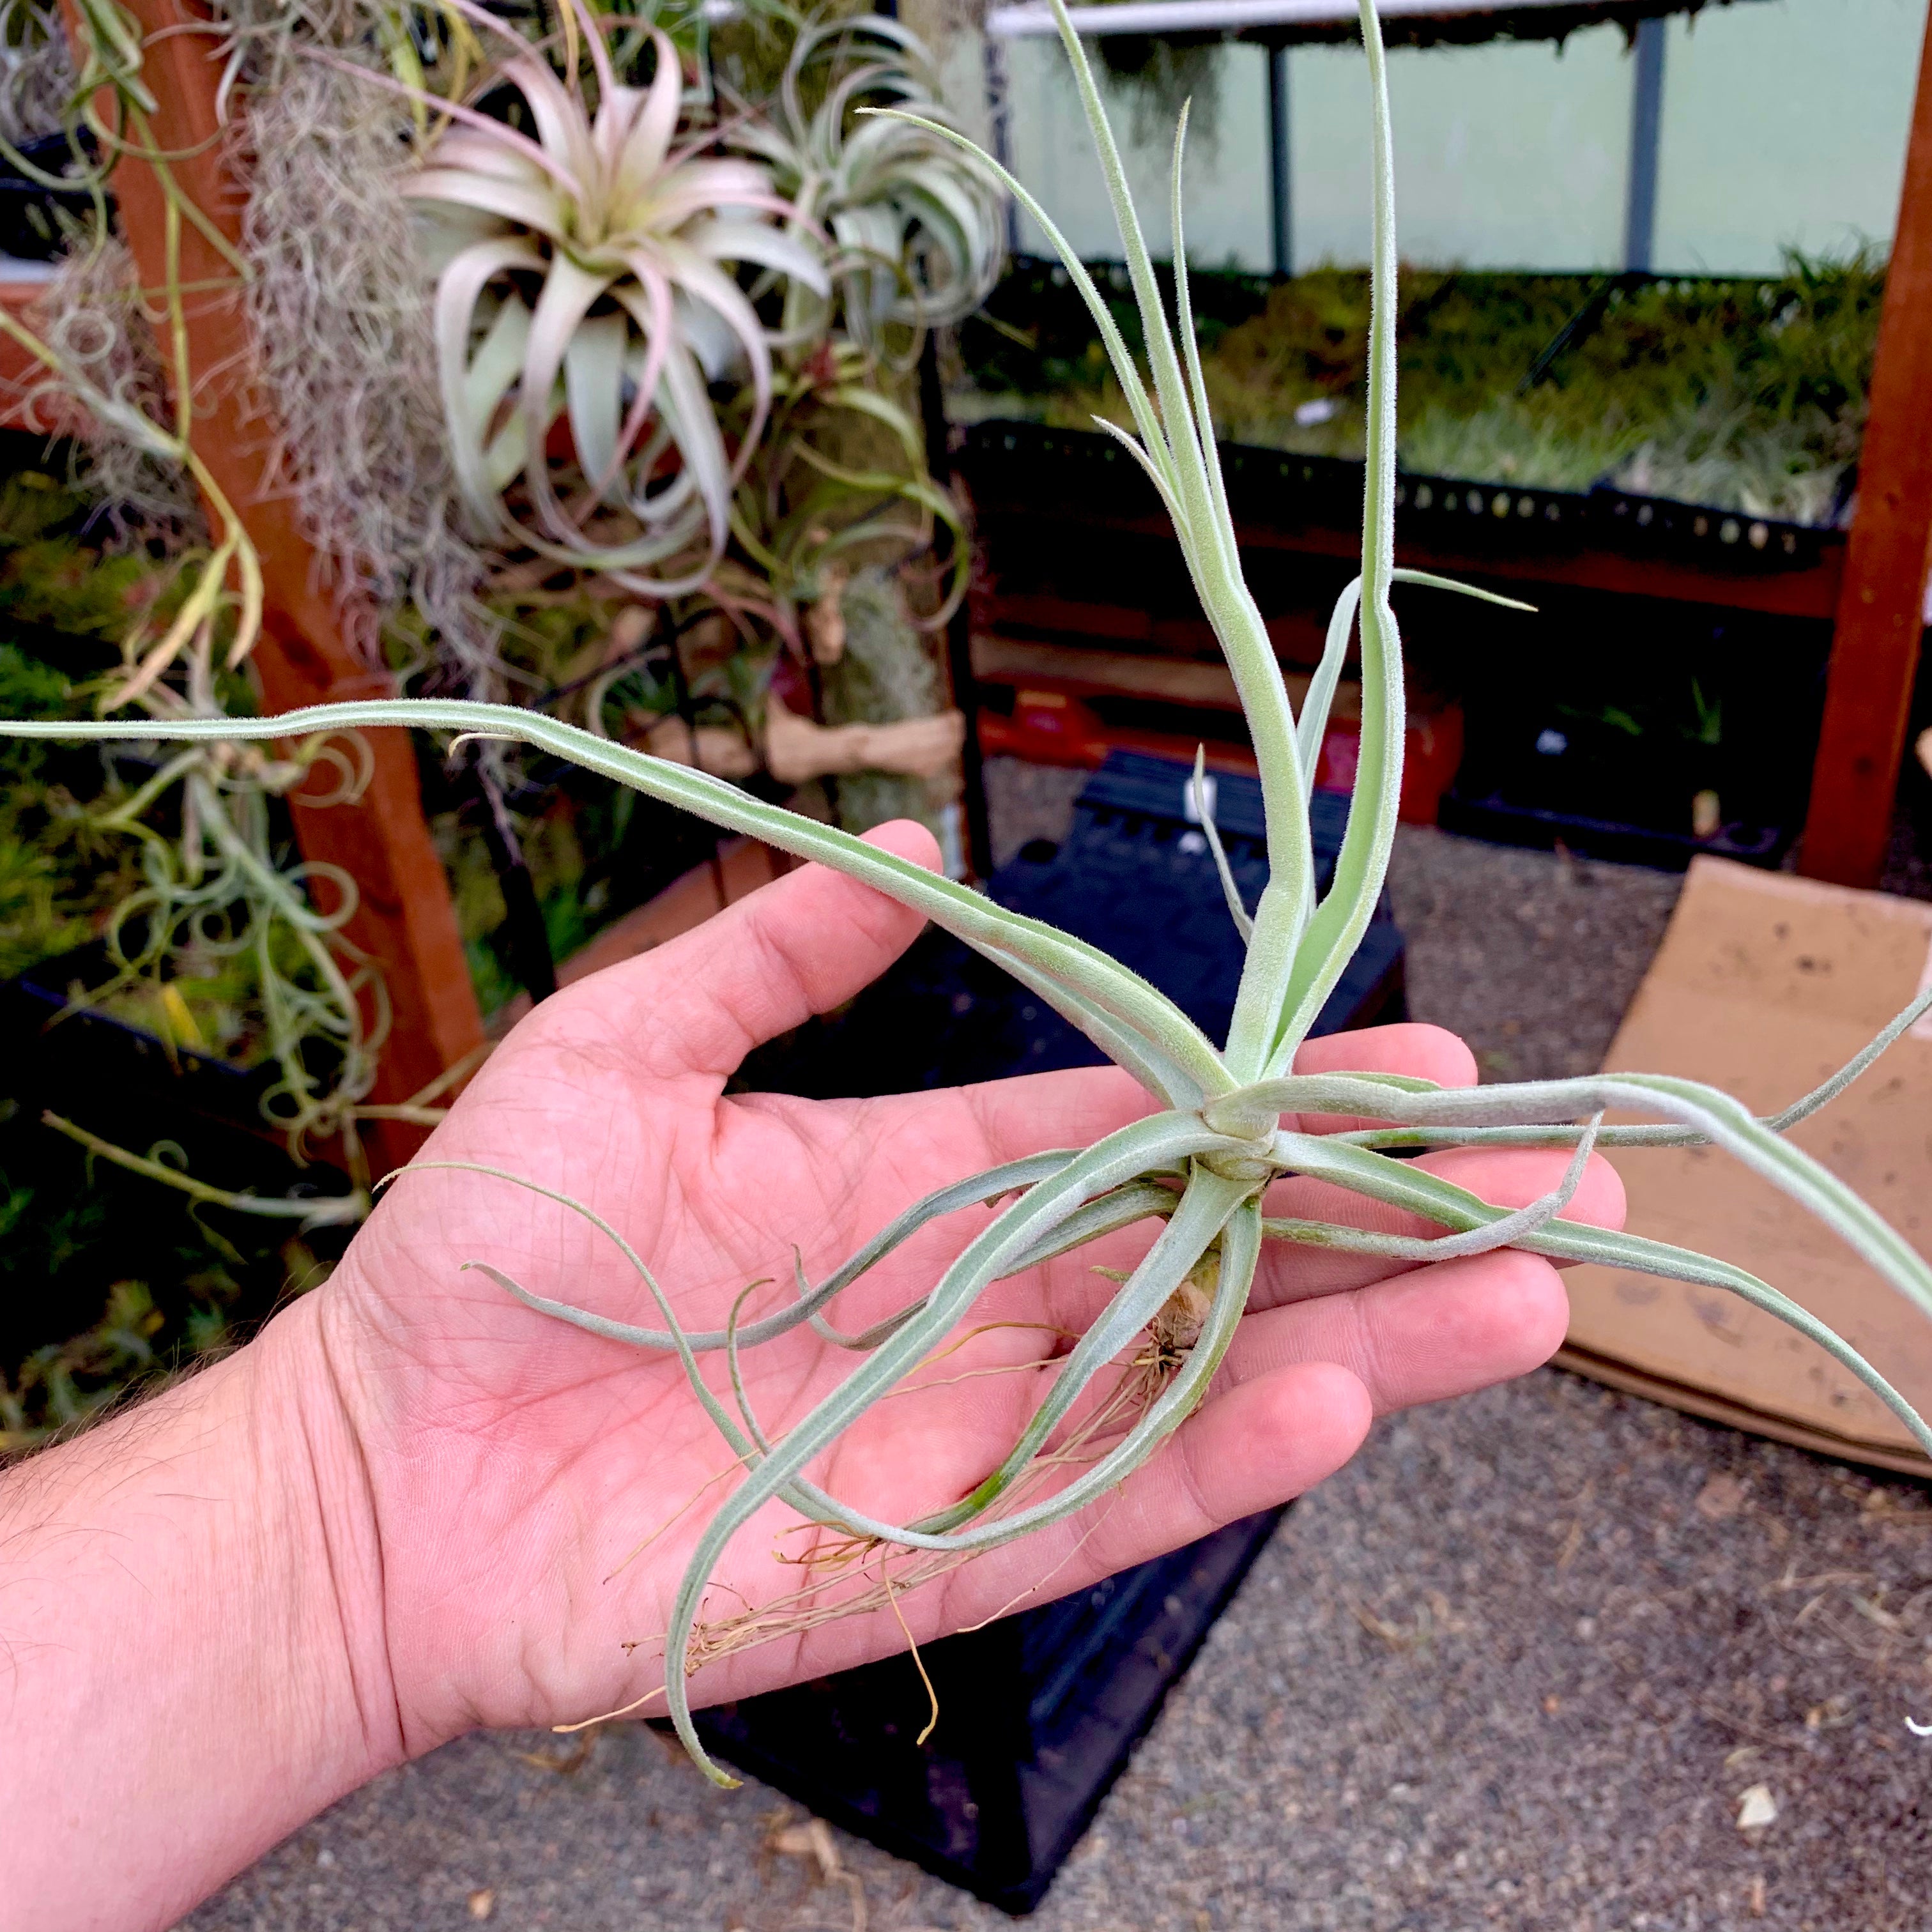 Tillandsia streptocarpa fragrant air plant species for sale